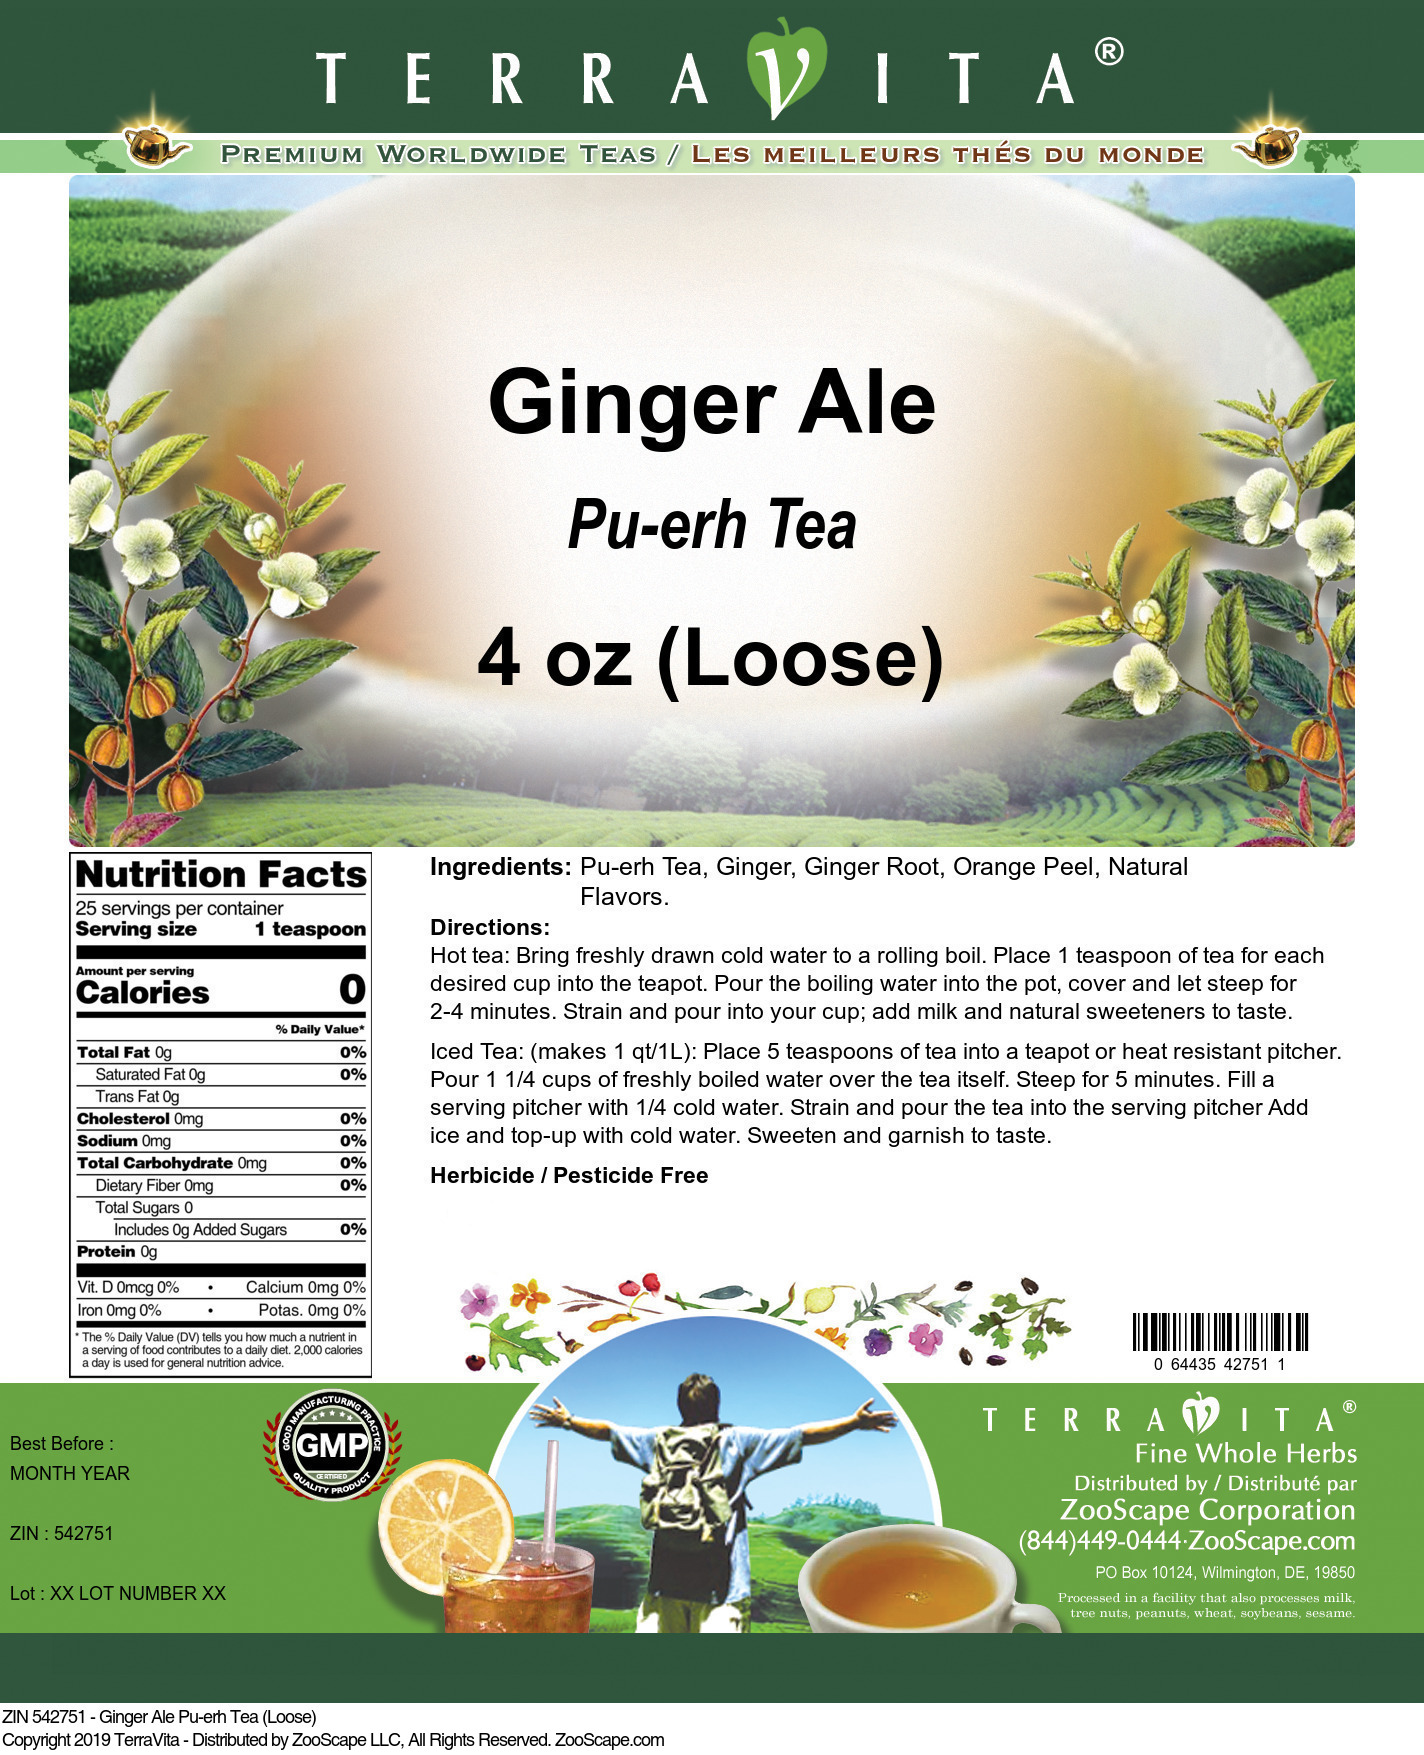 Ginger Ale Pu-erh Tea (Loose) - Label